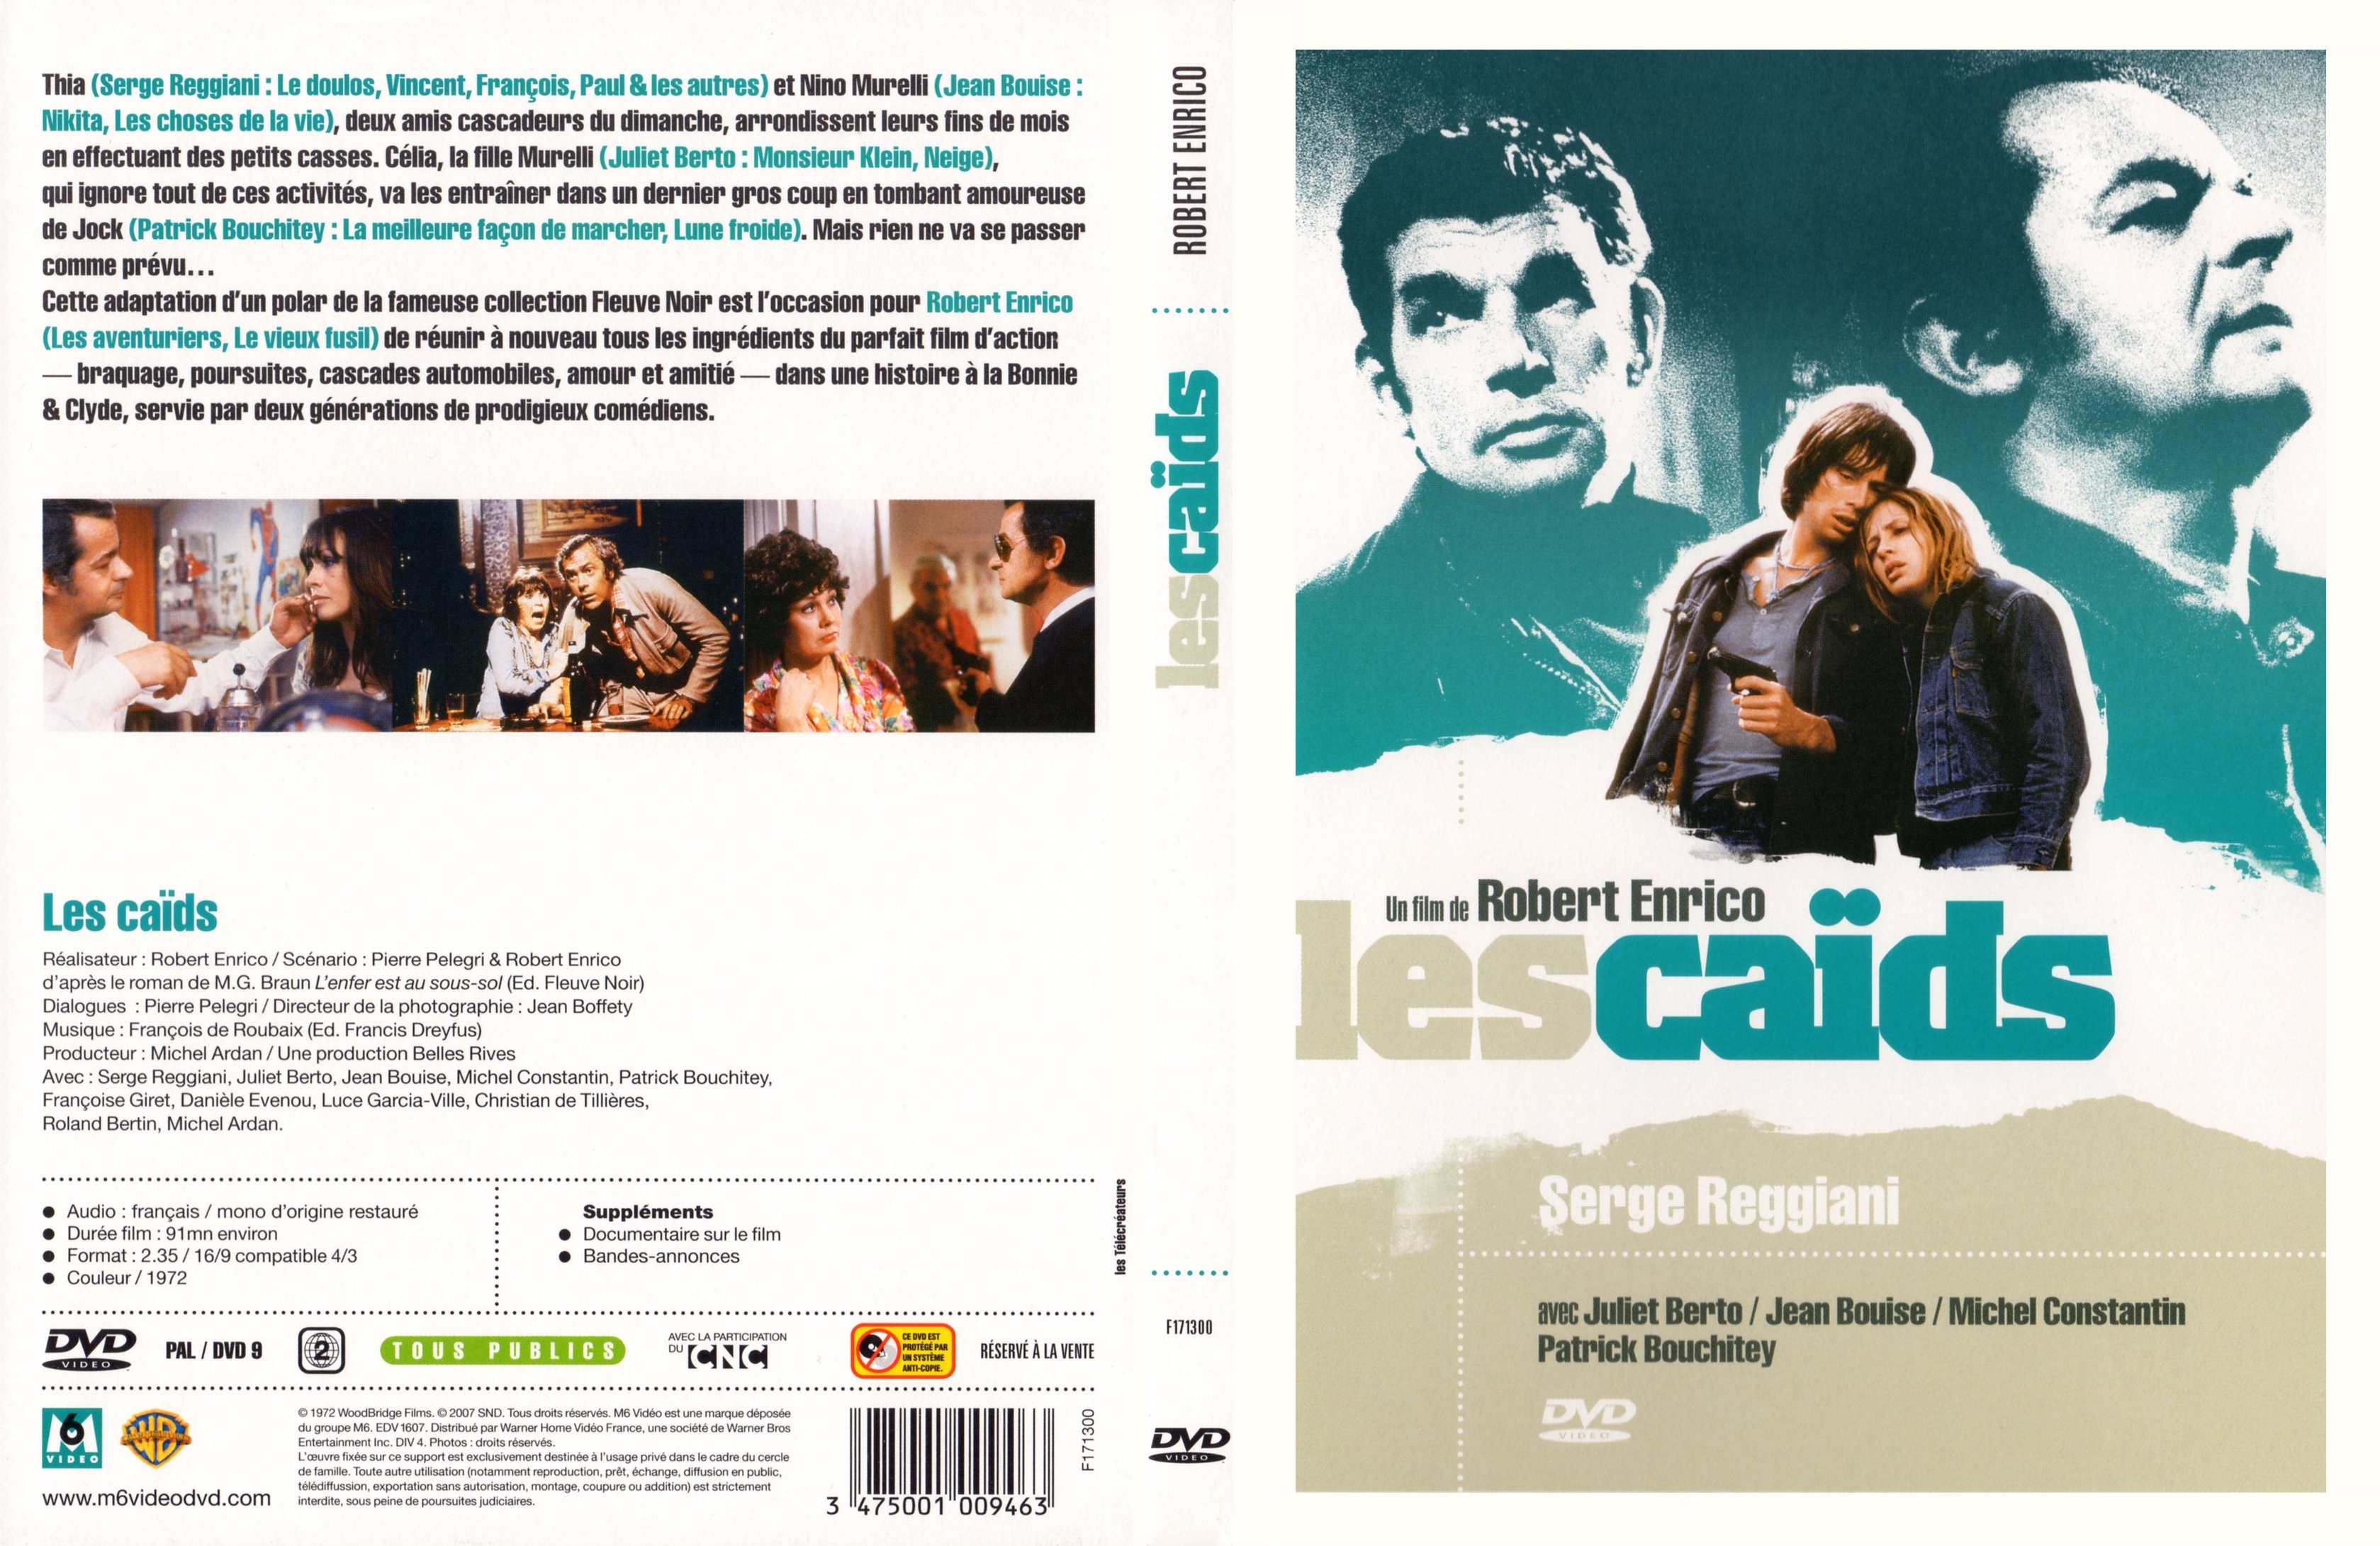 Jaquette DVD Les caids v2